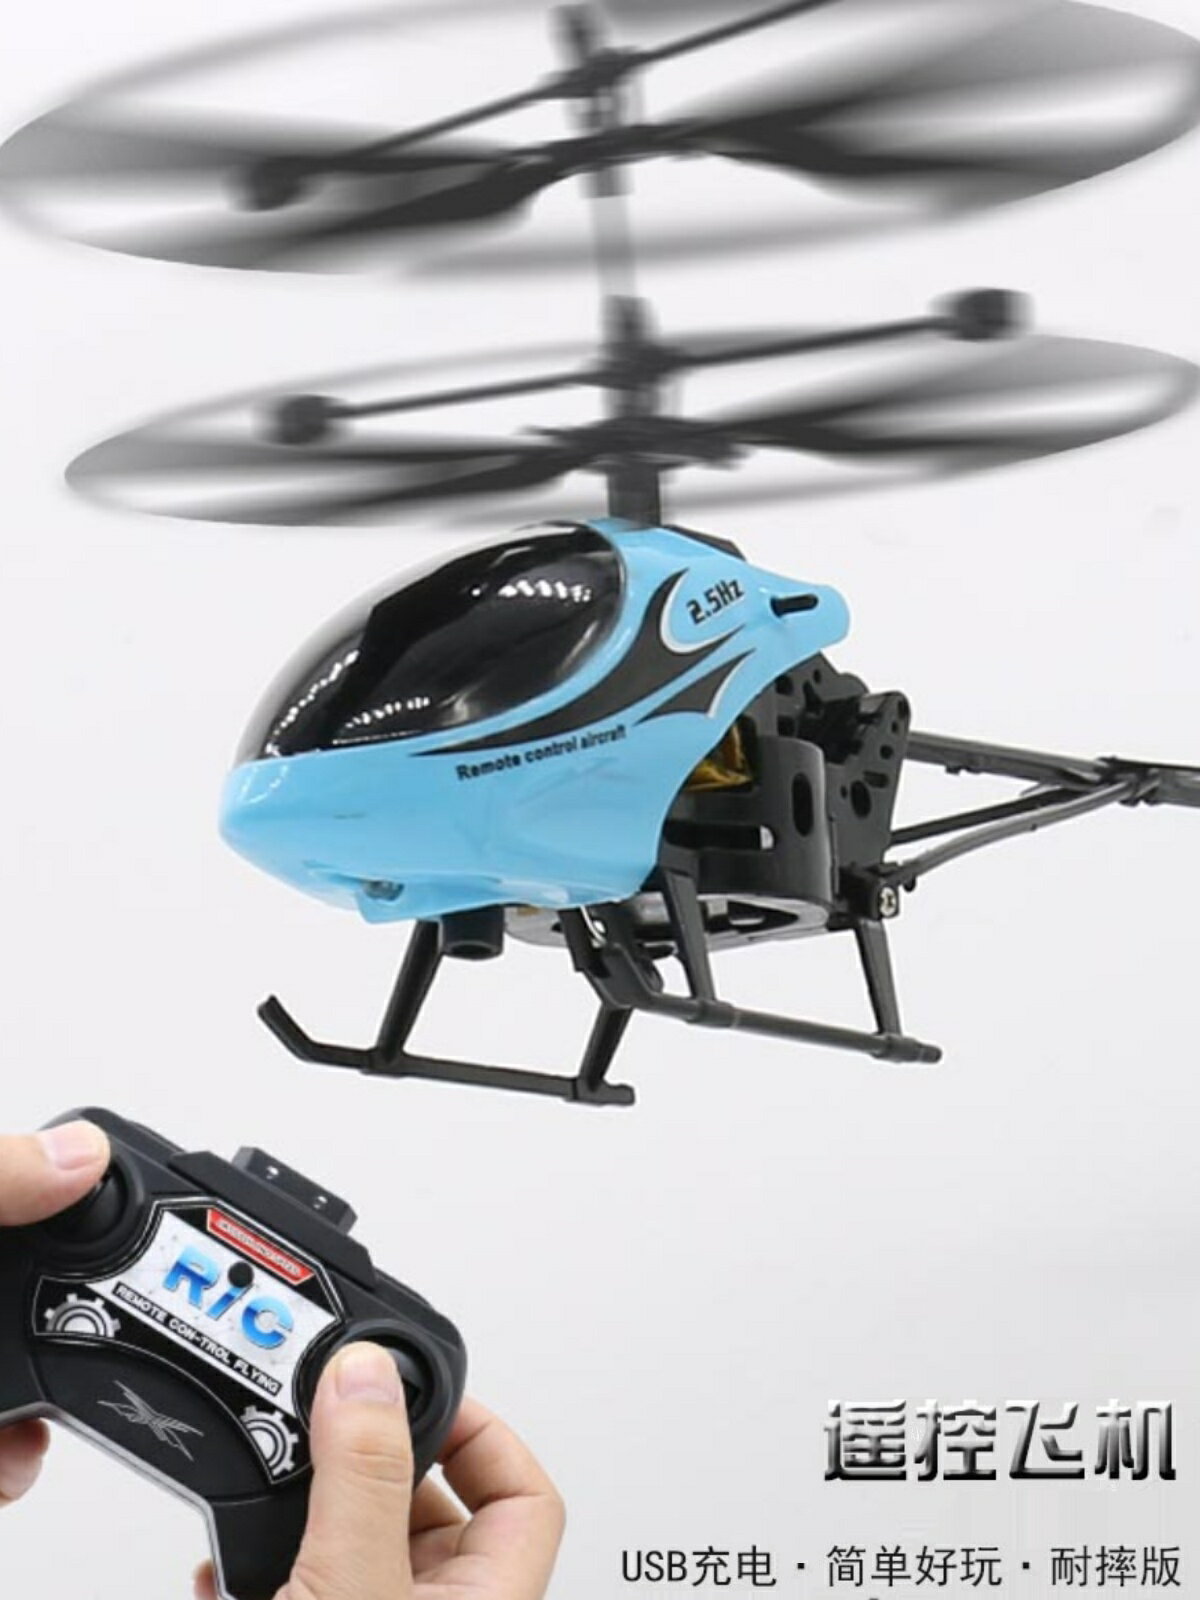 USB 充電耐摔遙控飛機直升機模型無人機感應行器兒童玩具男孩禮物